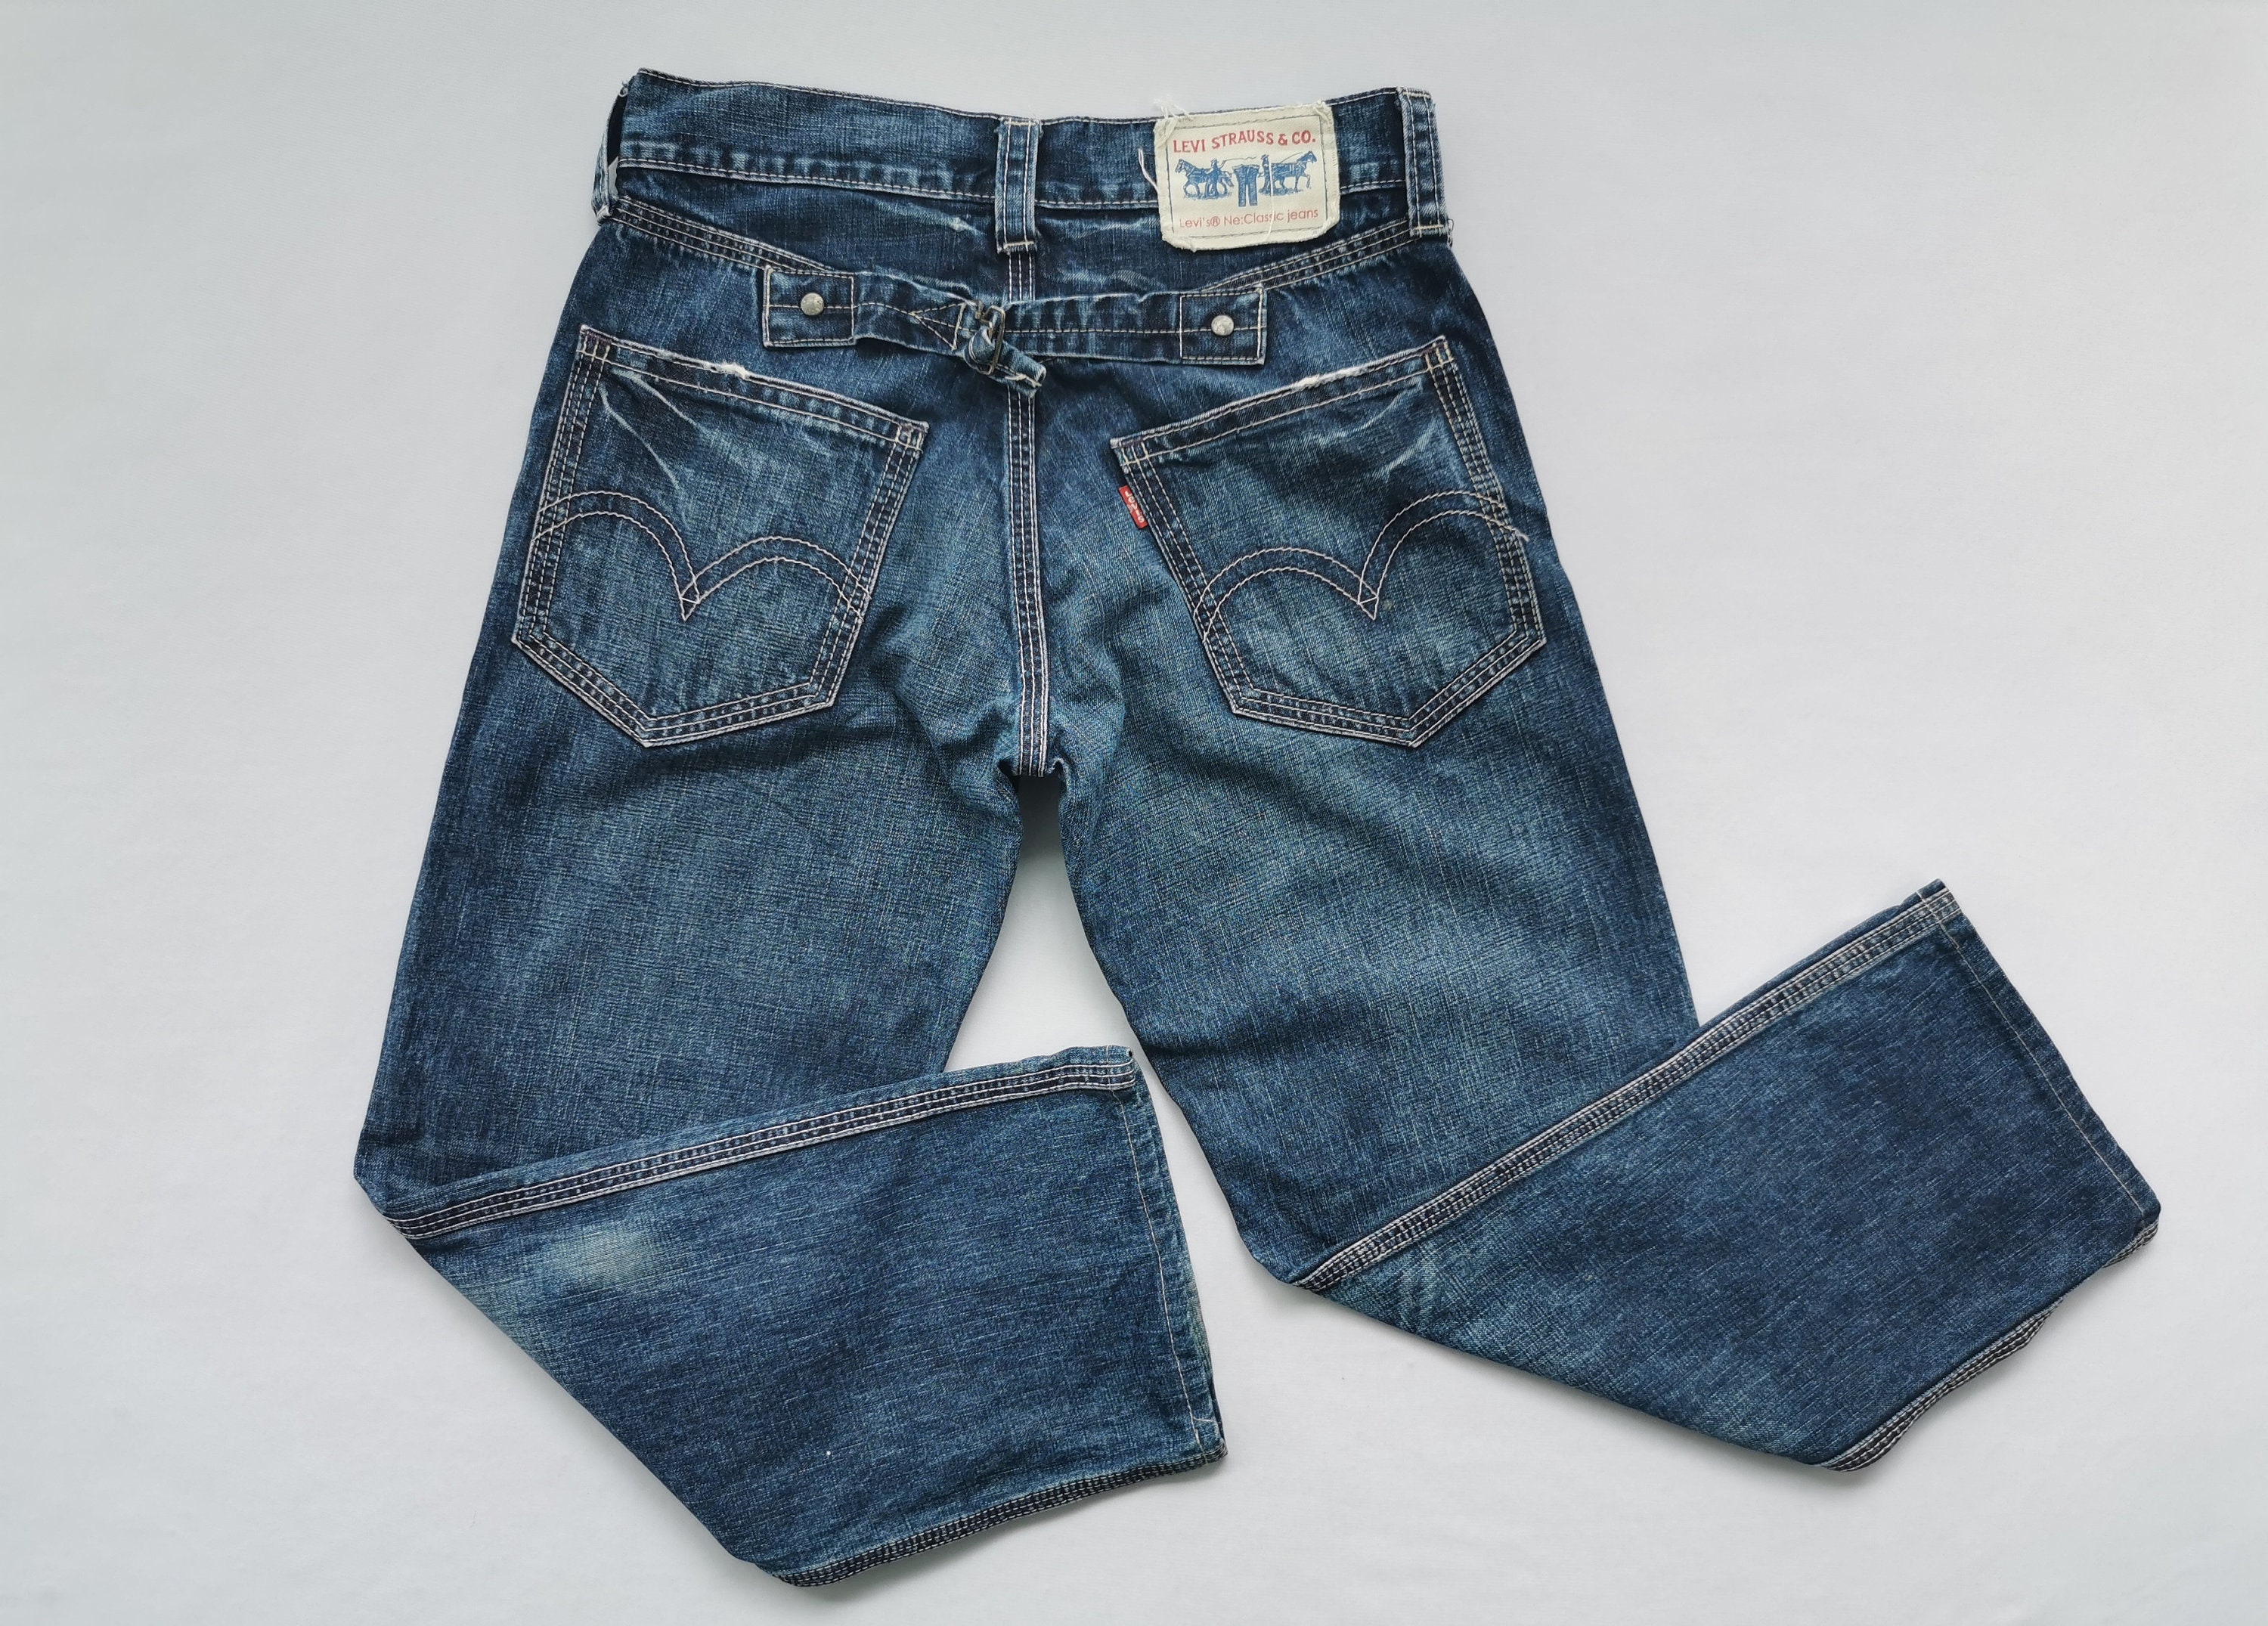 Levis Jeans Distressed Size 31 Levis Denim Pants Levis Back - Etsy